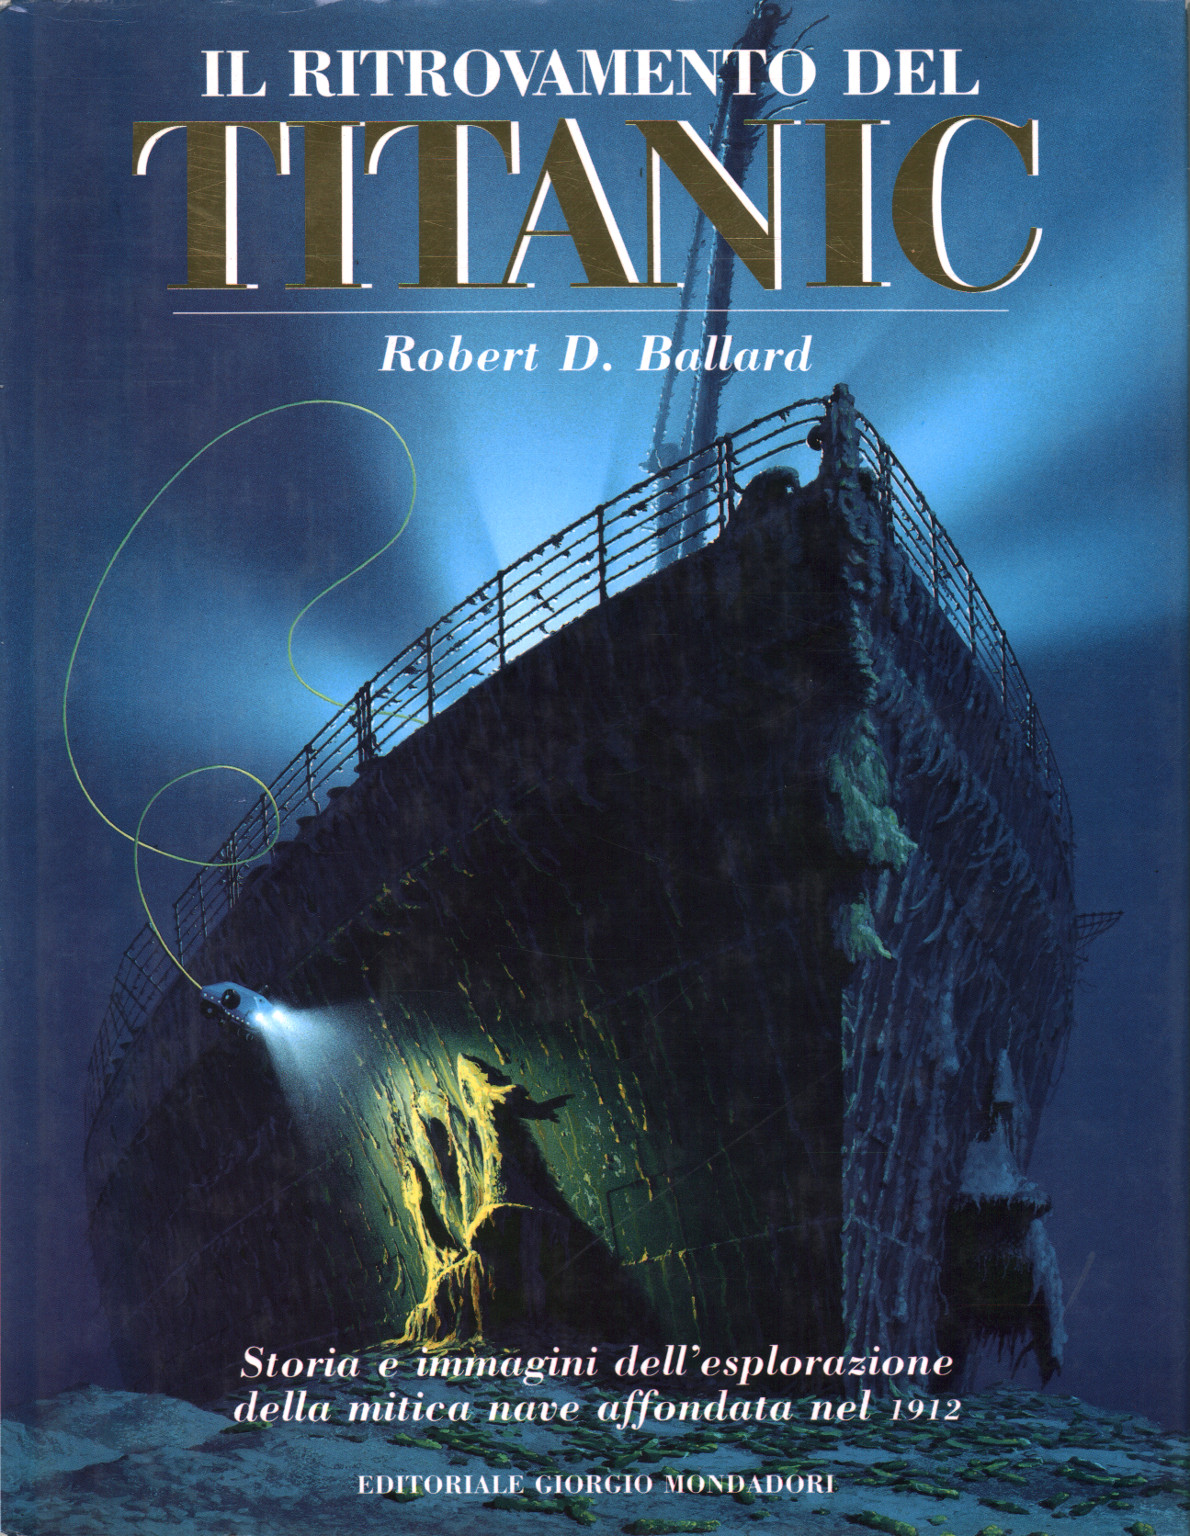 Il ritrovamento del Titanic, s.a.